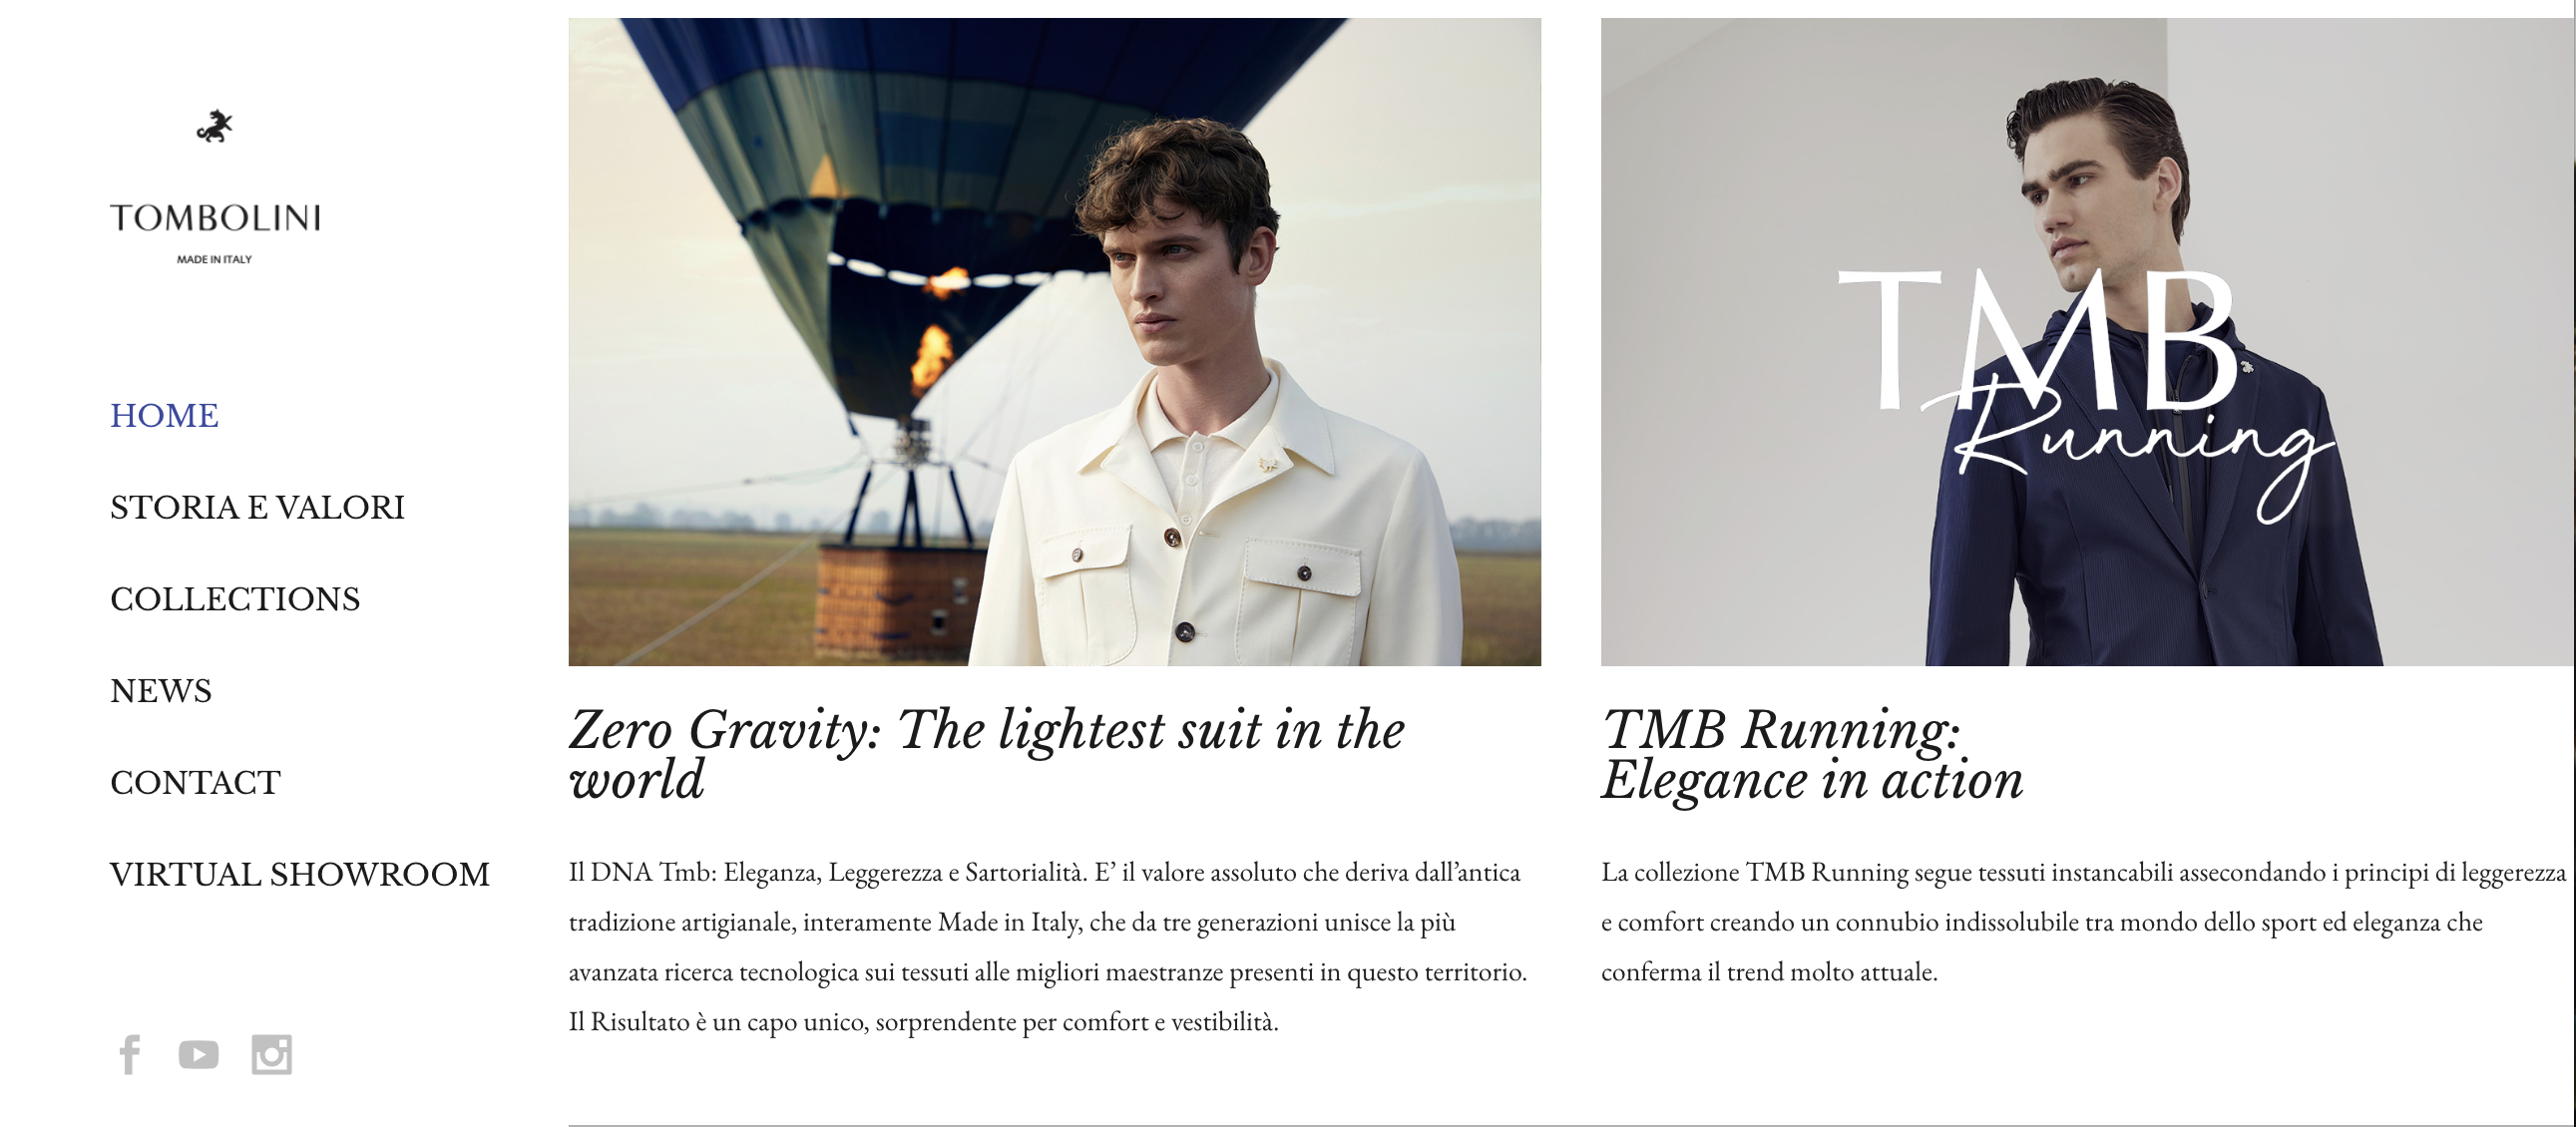 意大利高端男装品牌 Tombolini 2023年营业额1500万欧元，预计2024年增长30%